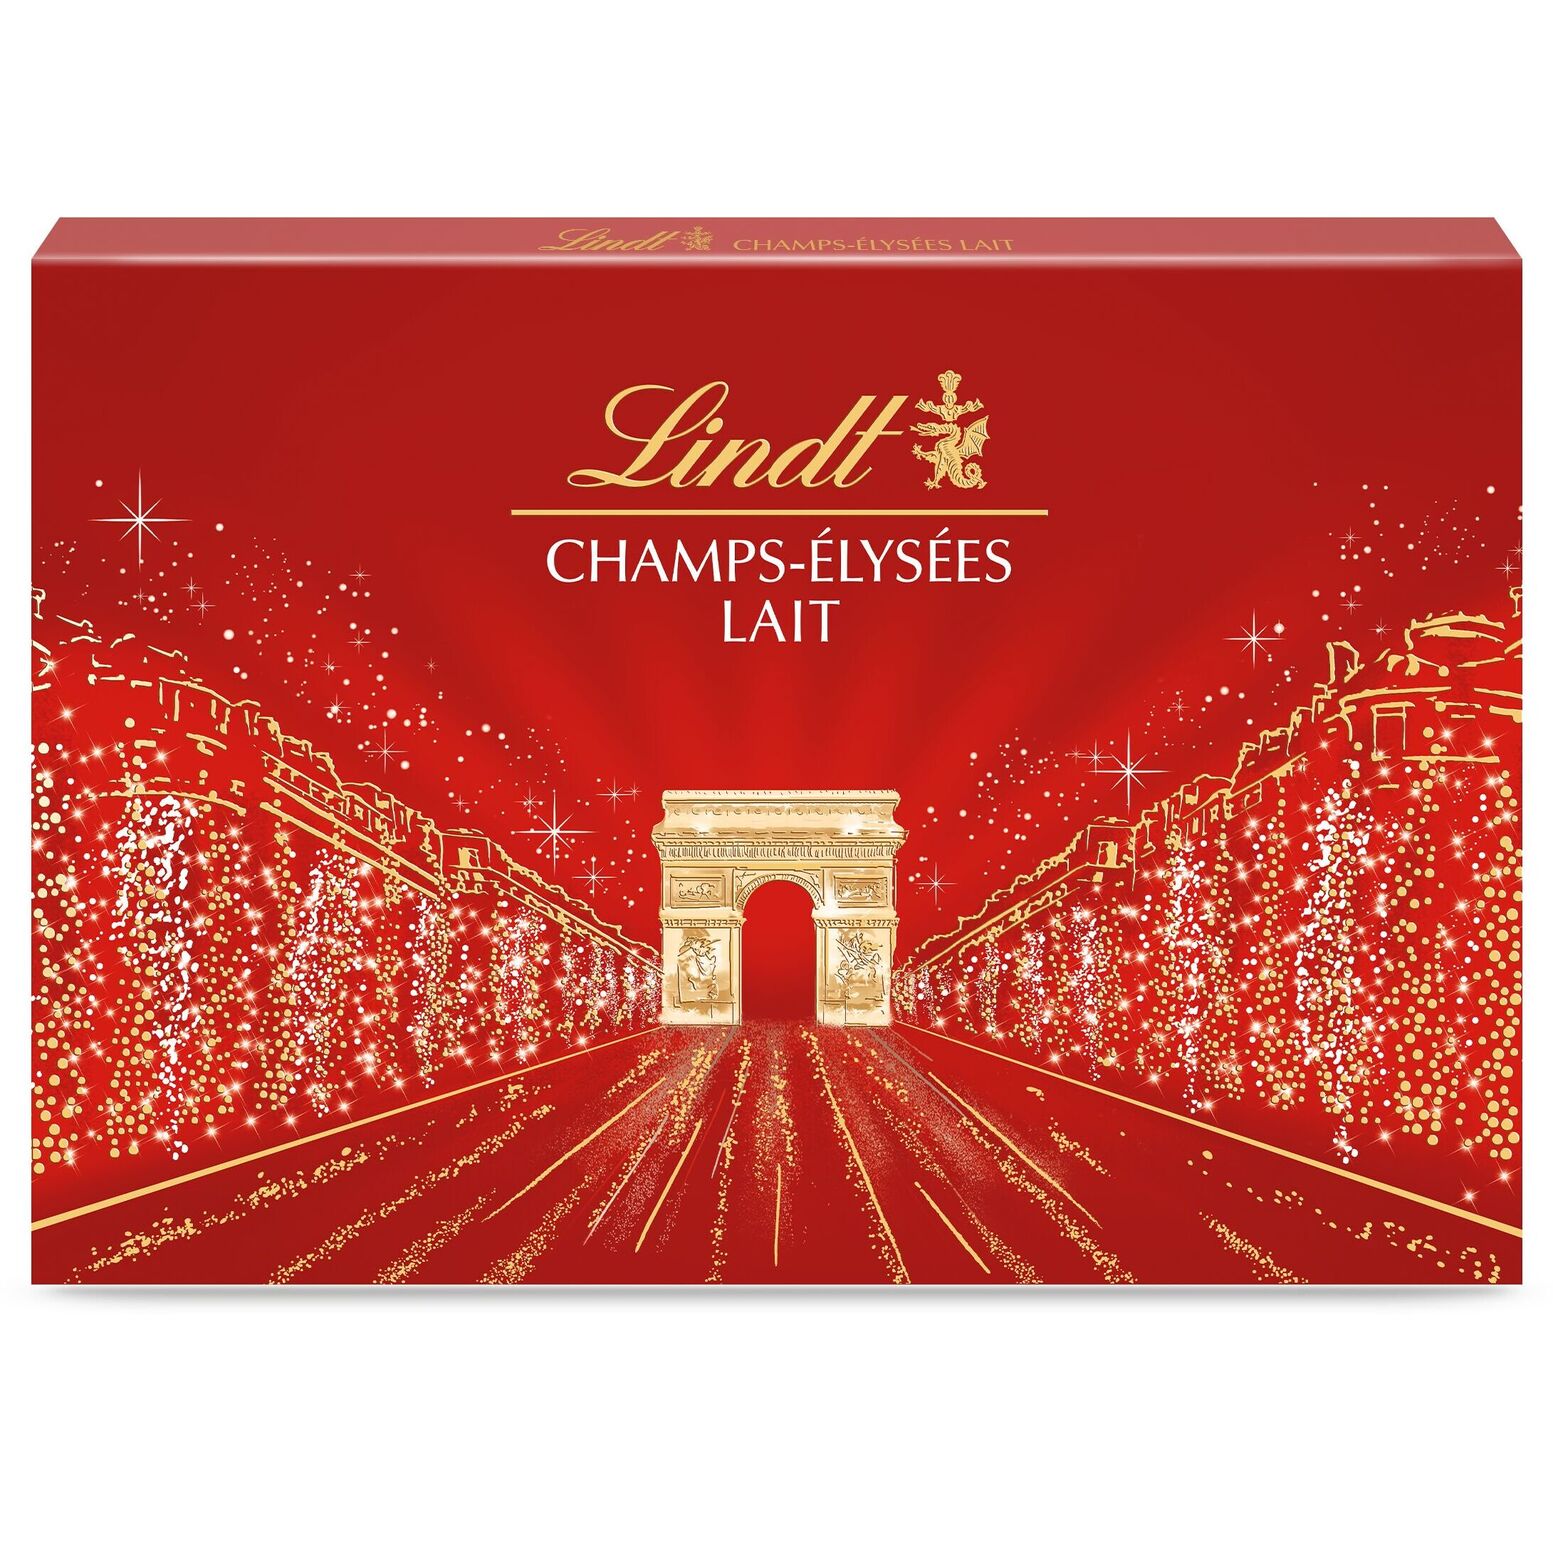 Chocolats au Lait Champs-Elysées